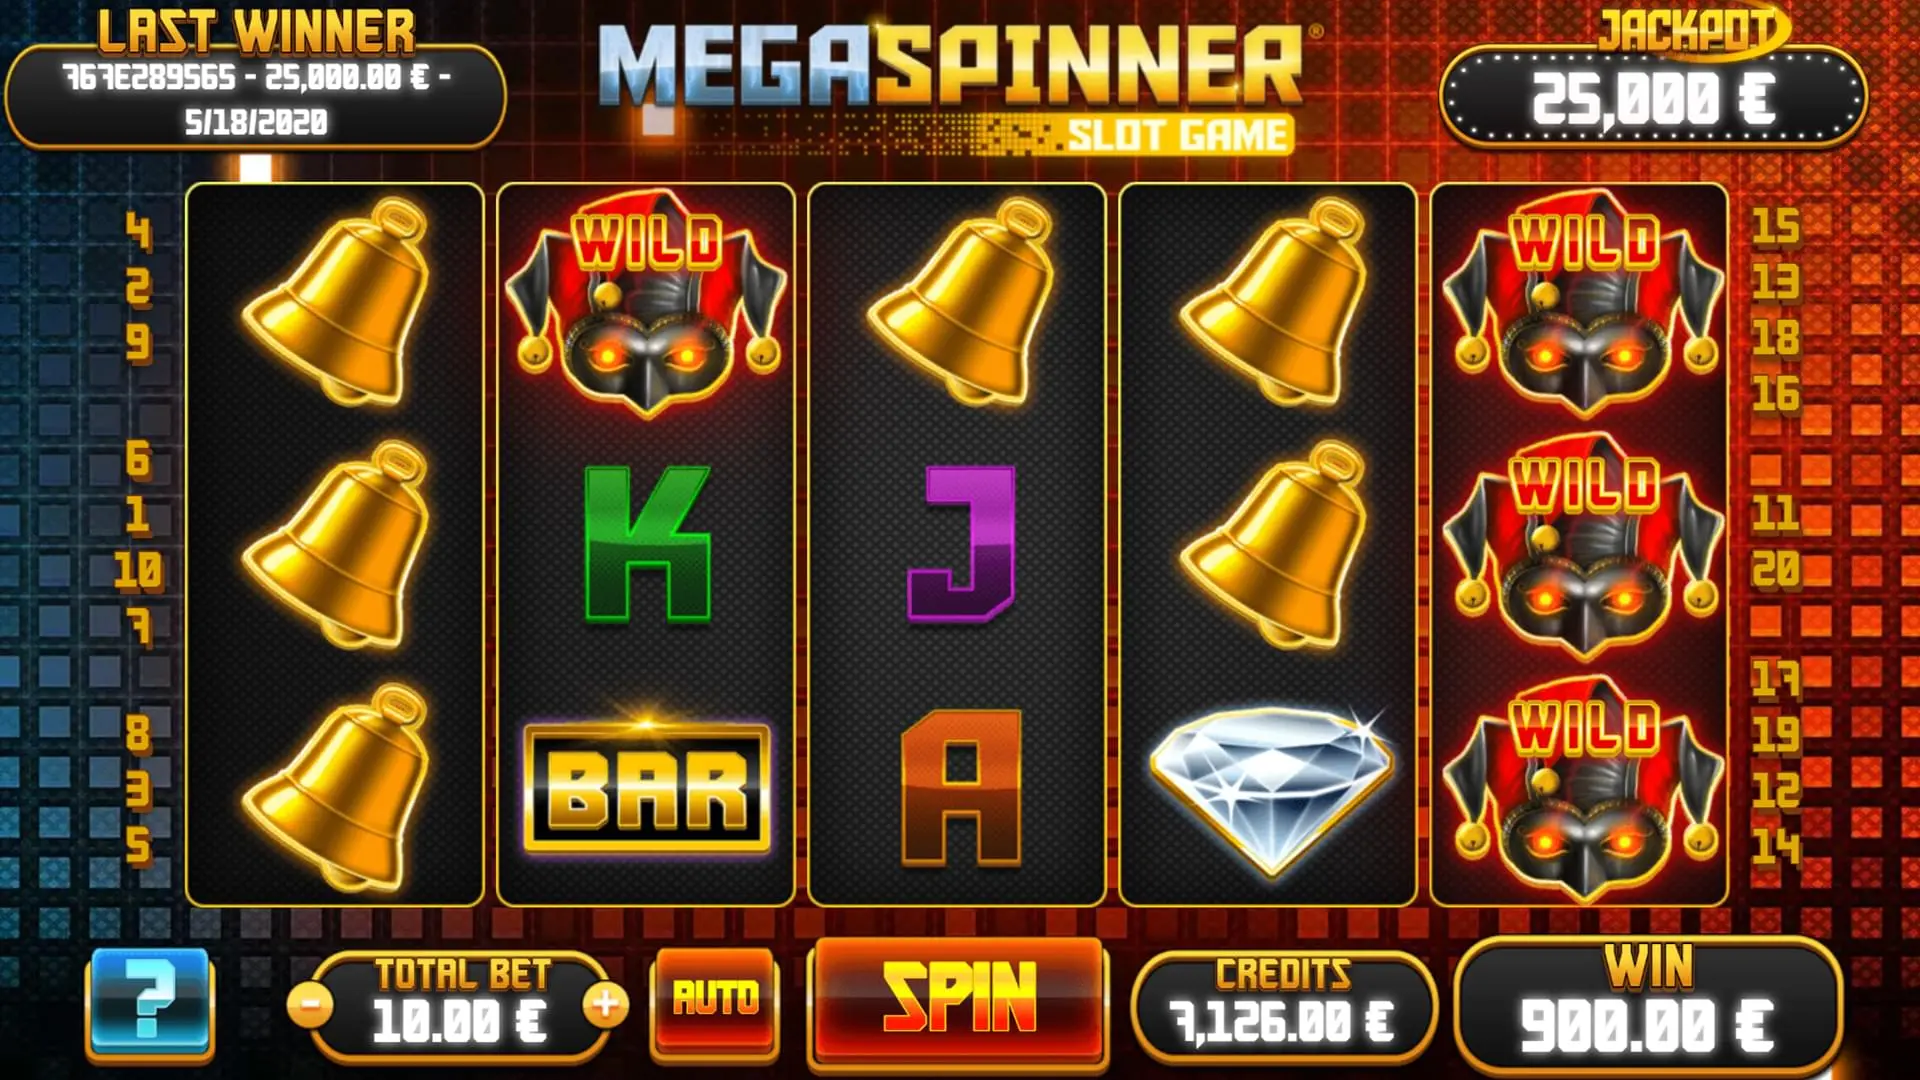 mega spinner slot game